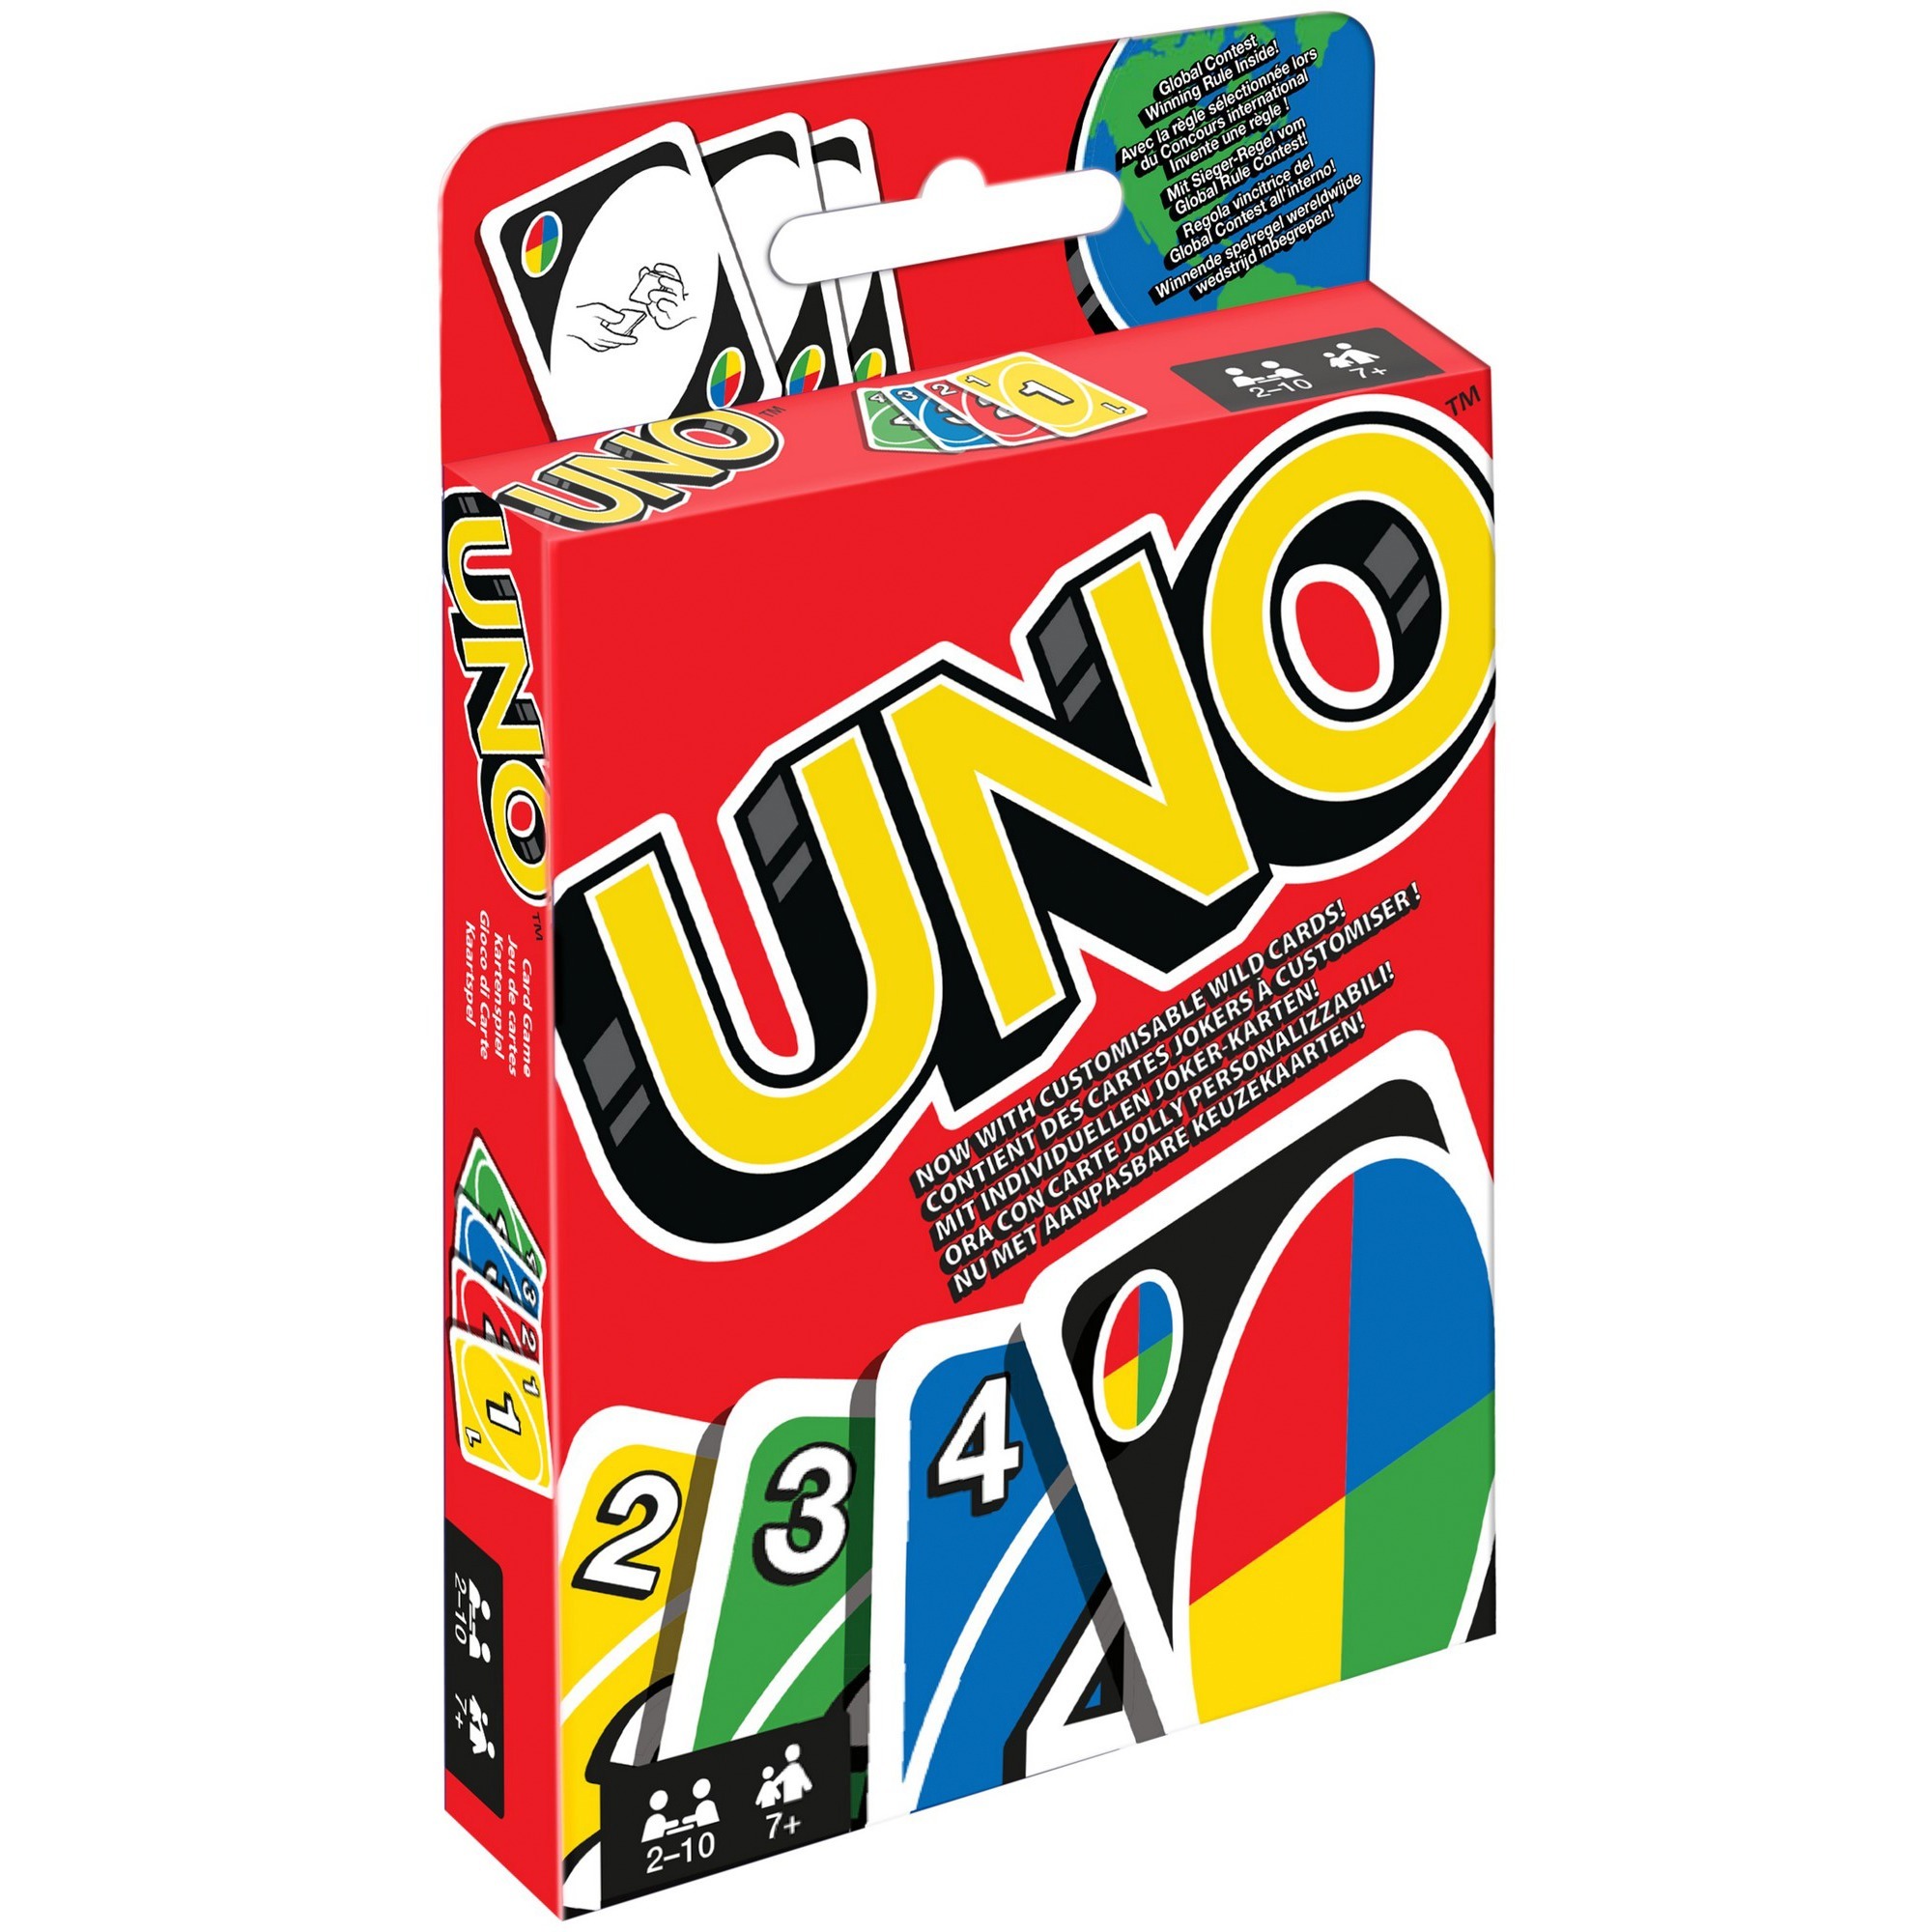 Image of Alternate - UNO Kartenspiel online einkaufen bei Alternate